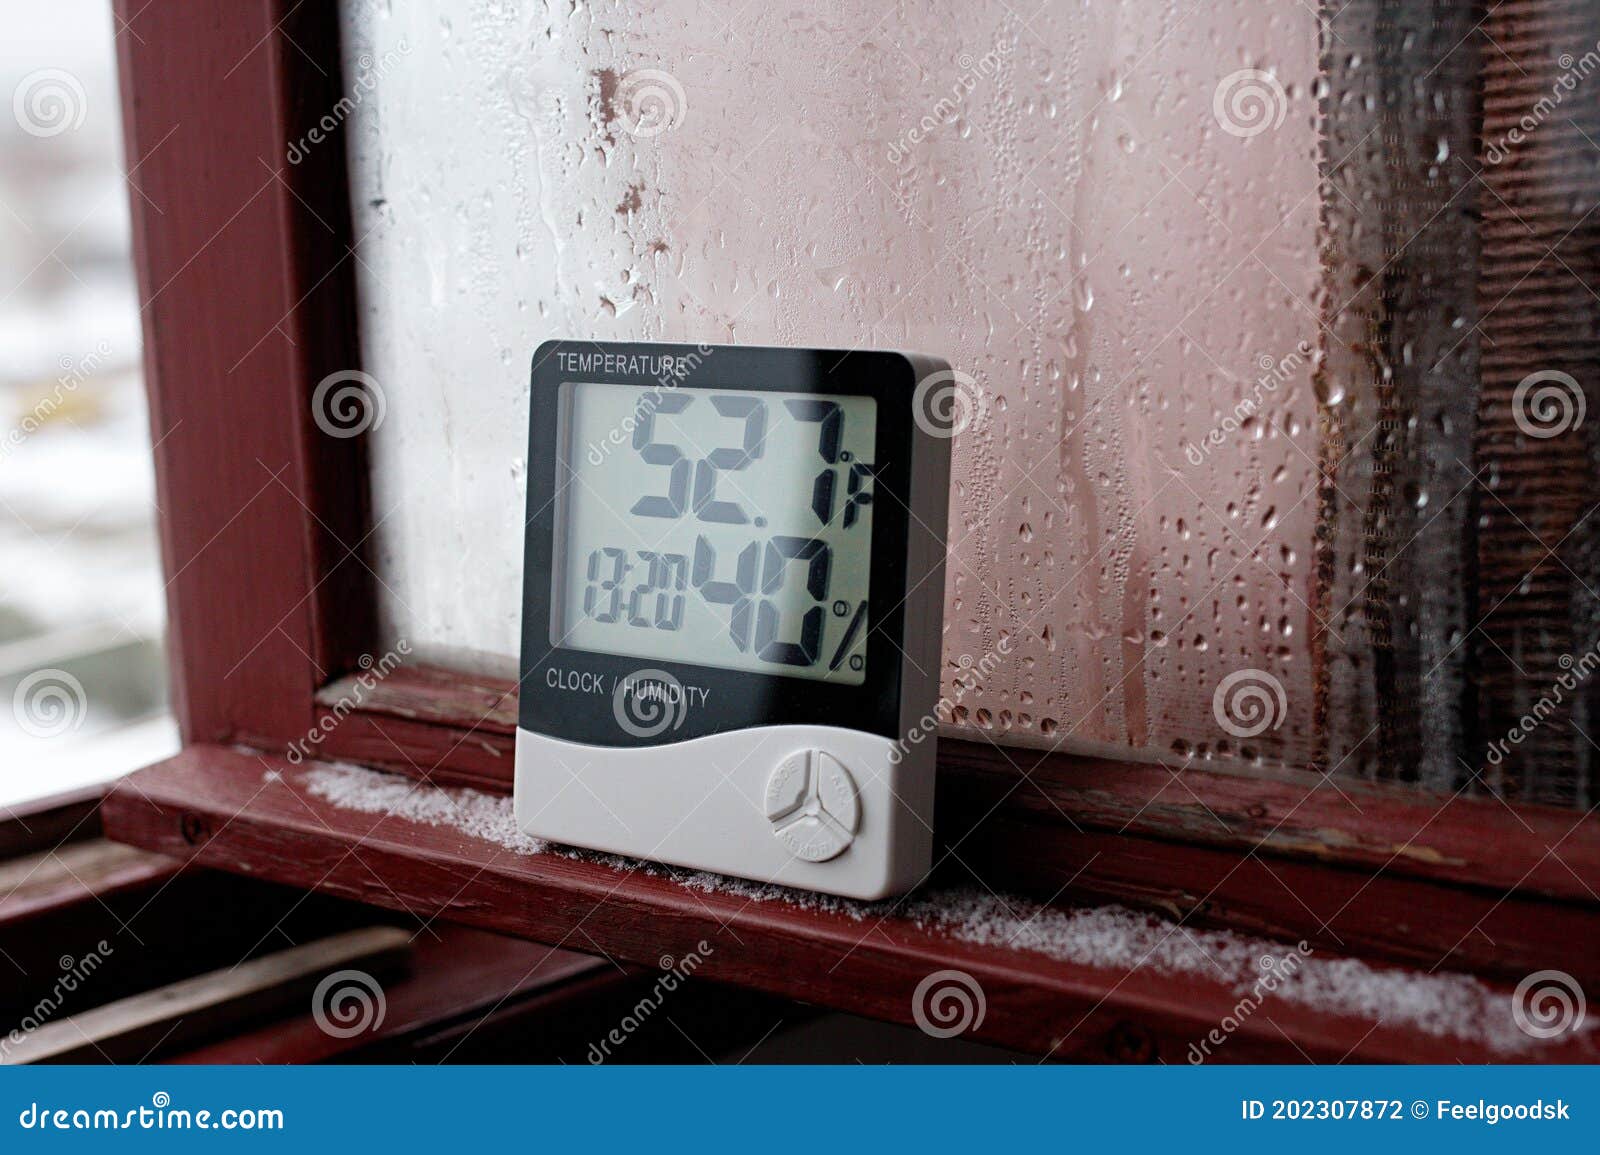 Thermomètre hygromètre point de rosée